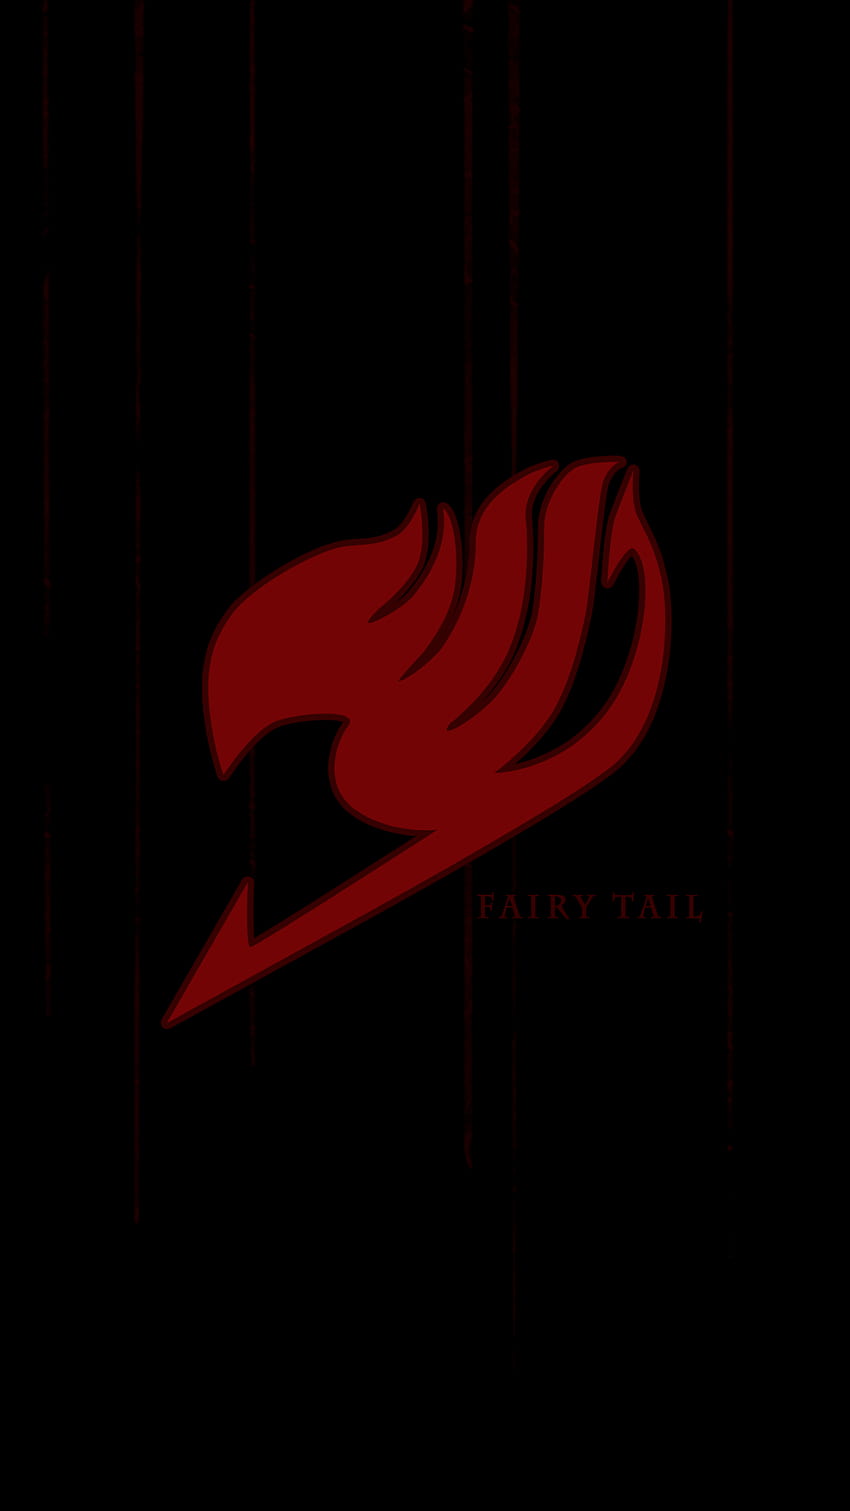 Fairy Tail Logo Full On . Fairy tail logo, Fairy tail, Natsu fairy tail, Dark Fairy Tale HD phone wallpaper